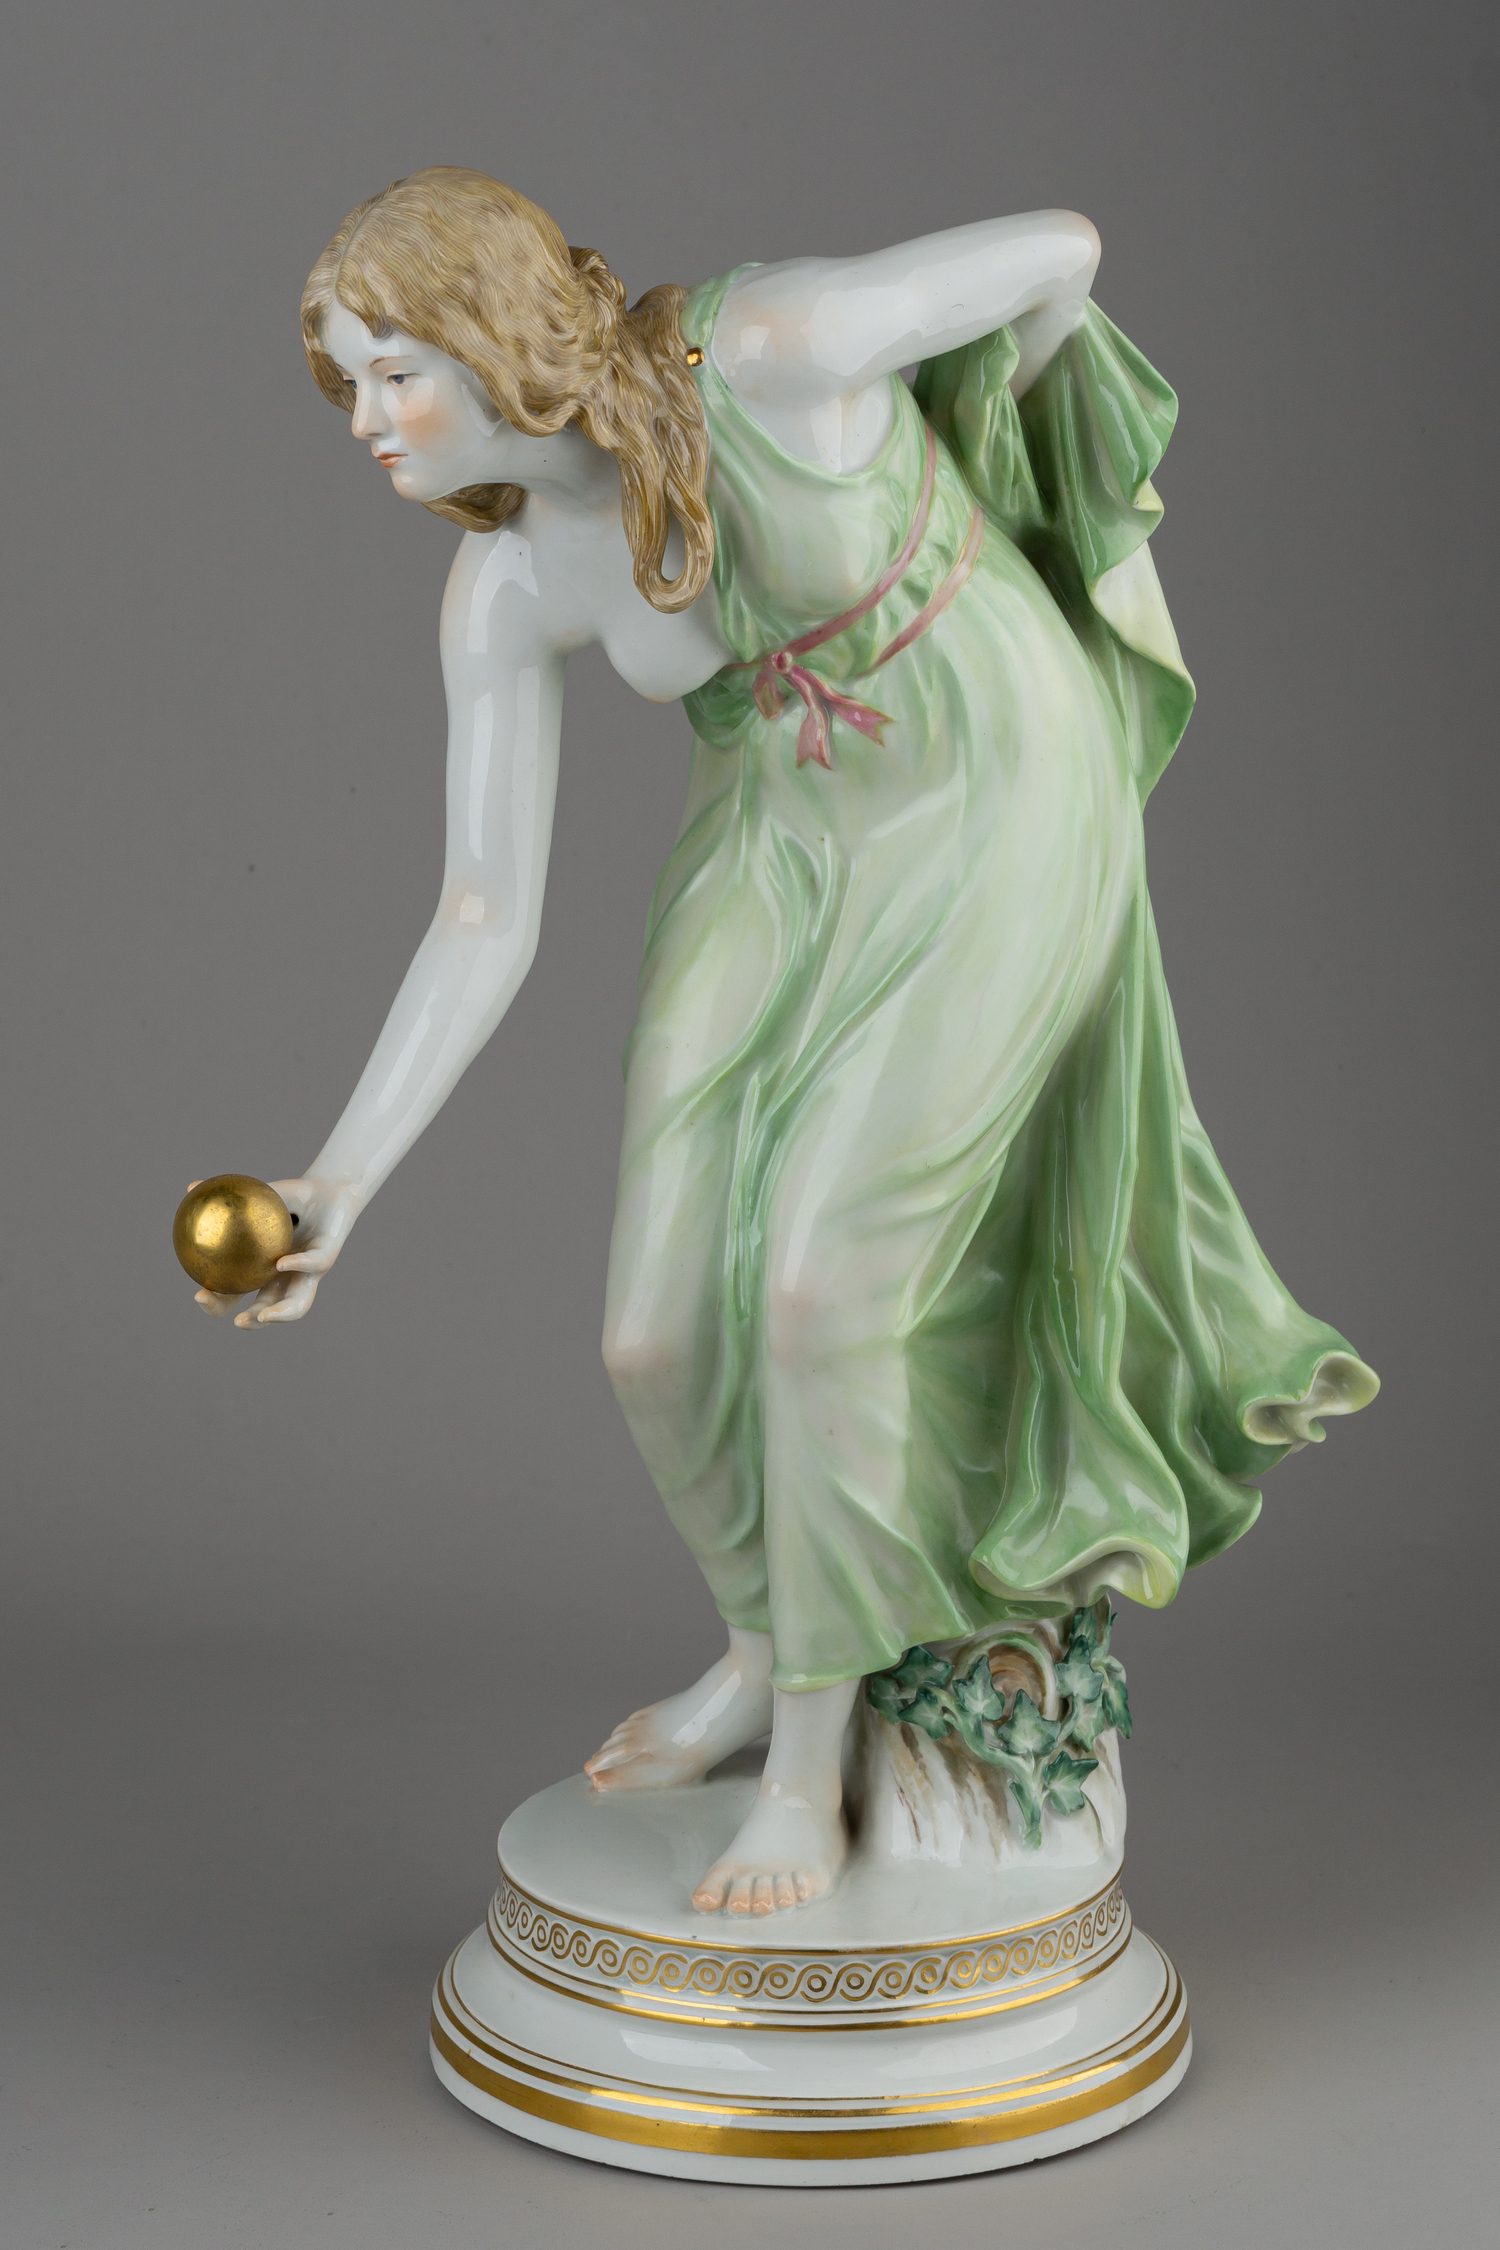 Скульптура “Девушка, играющая в мяч”.<br><br>Германия, мануфактура Meissen, автор модели Вальтер Шотт, 1945-1947 годы.